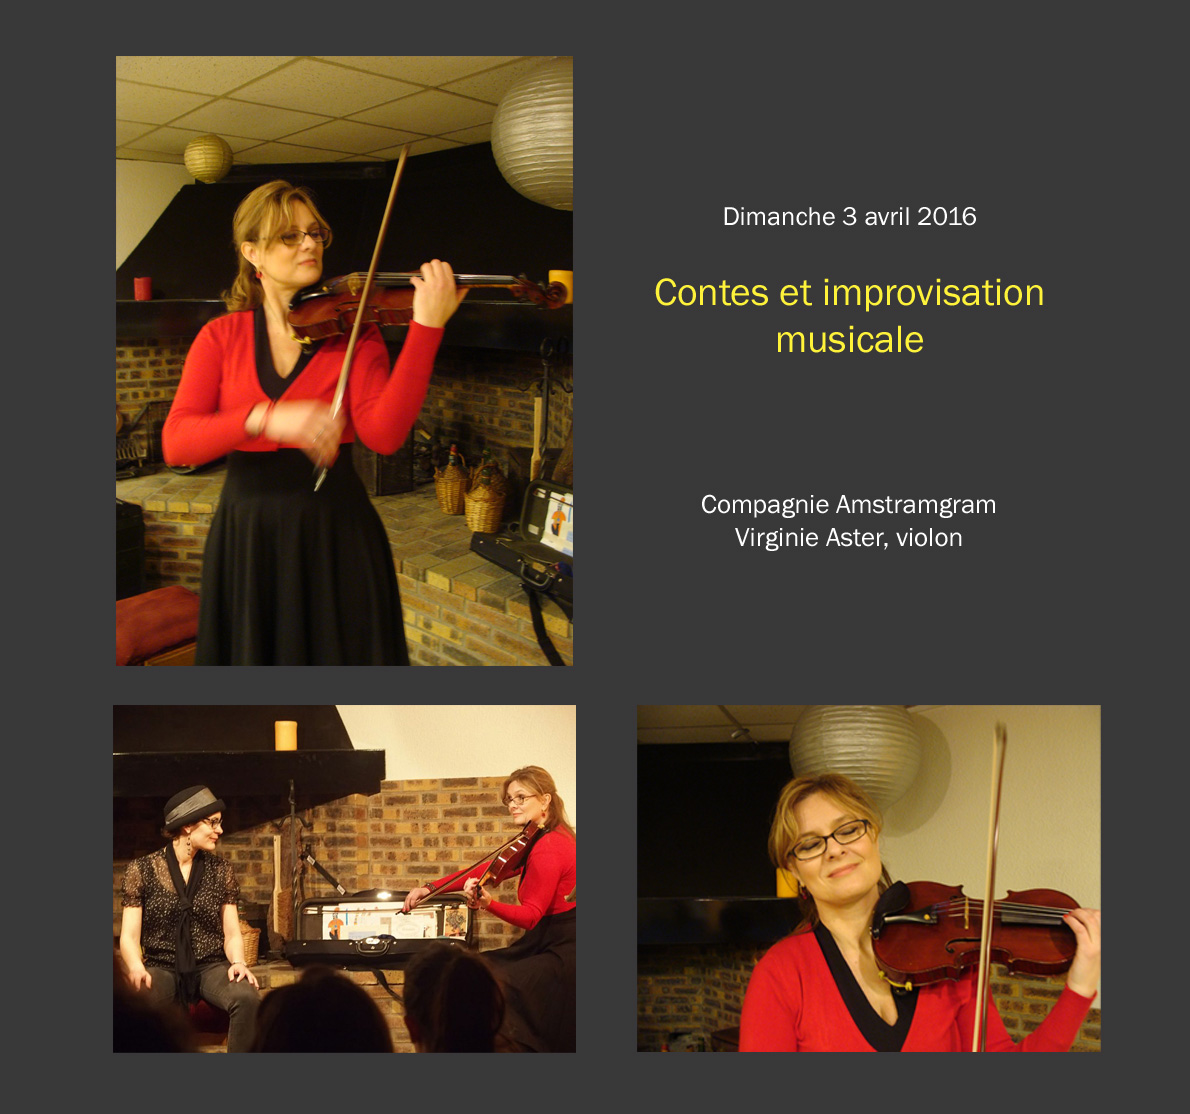 Contes et improvisation musicale - dimanche 3 avril 2016